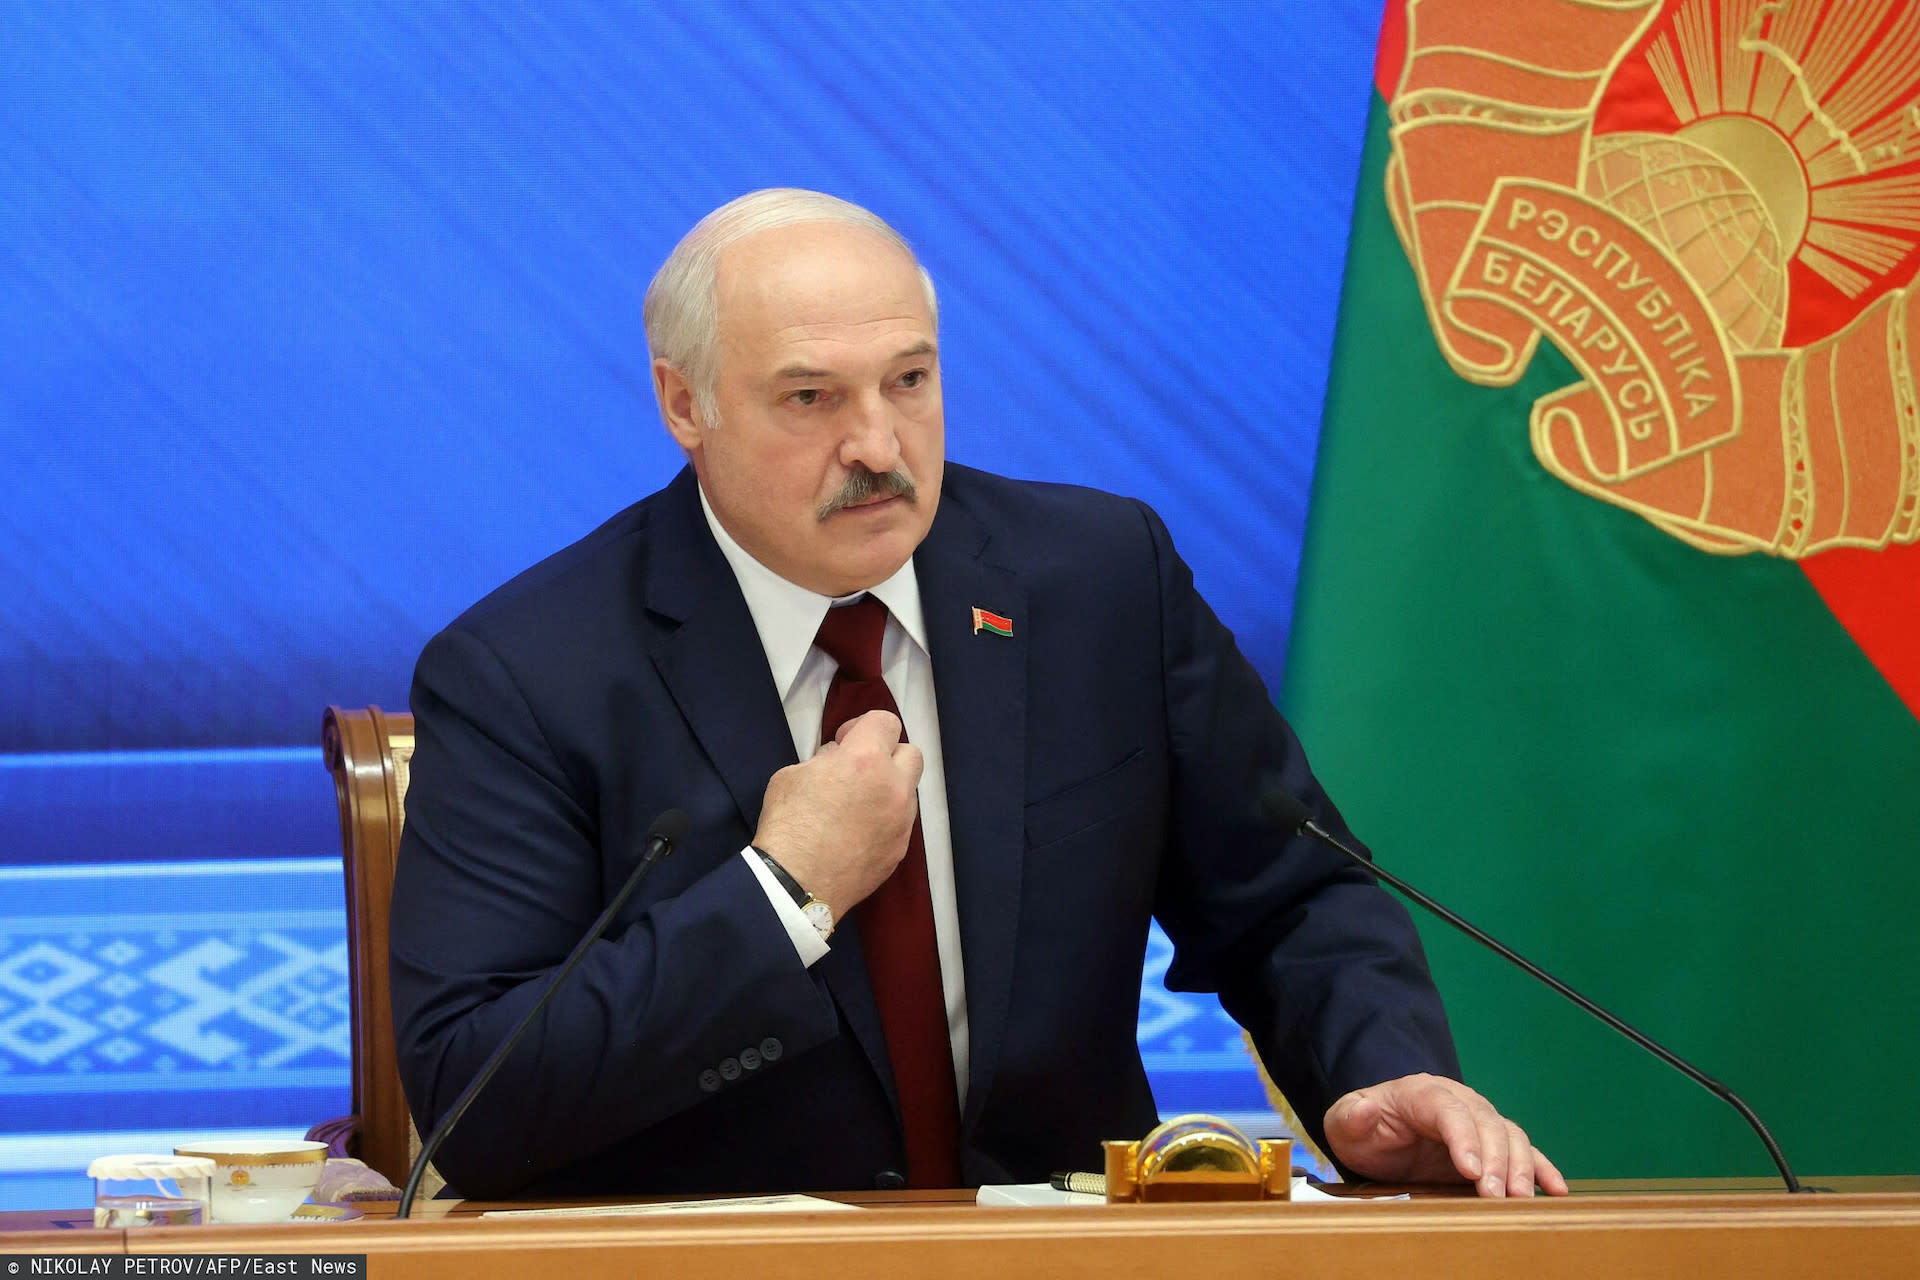 Białoruś rozszerza karę śmierci, parlament podjął decyzję, wszystko w rękach Łukaszenki